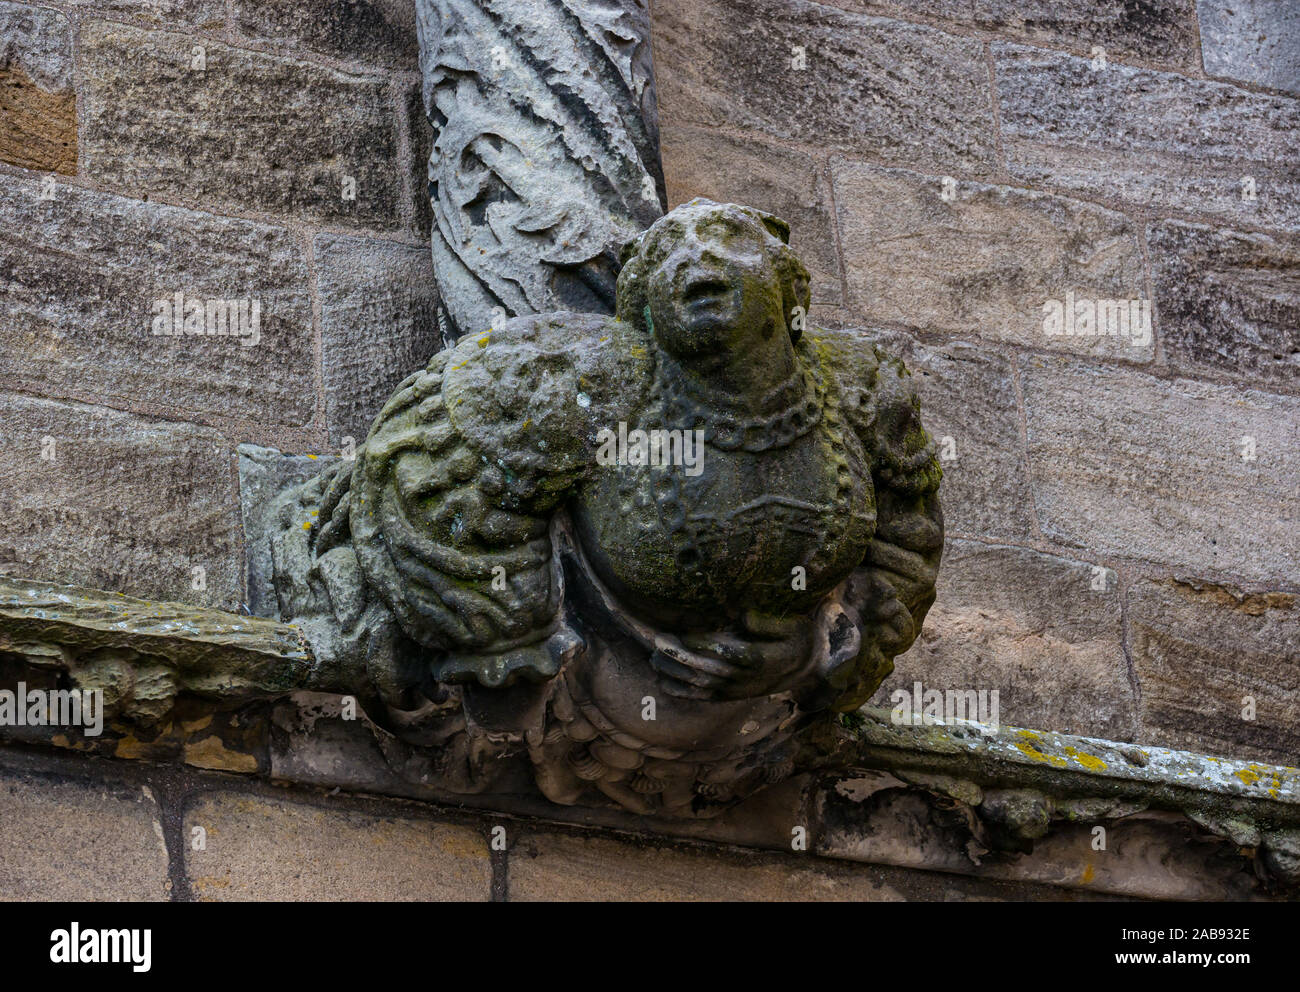 Gargoyle on palace building, Stirling Castle, Scotland, UK Stock Photo